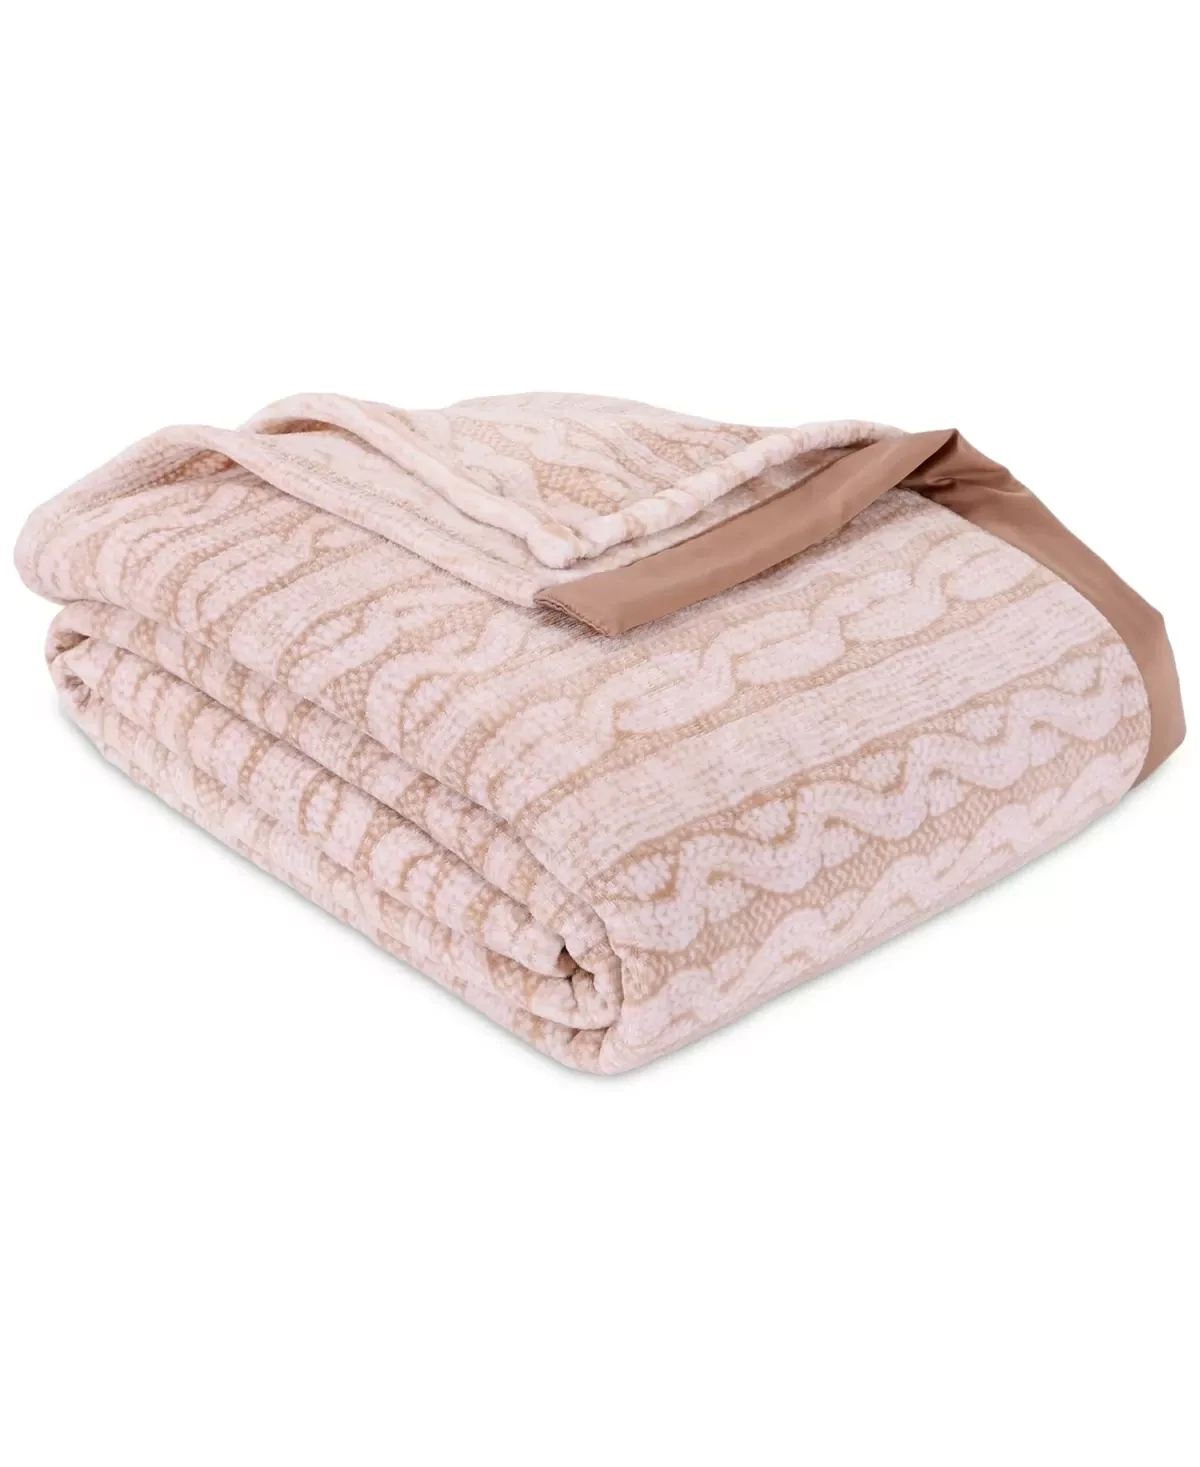 Berkshire Classic Velvety Plush Full/Queen Blanket, Bedding